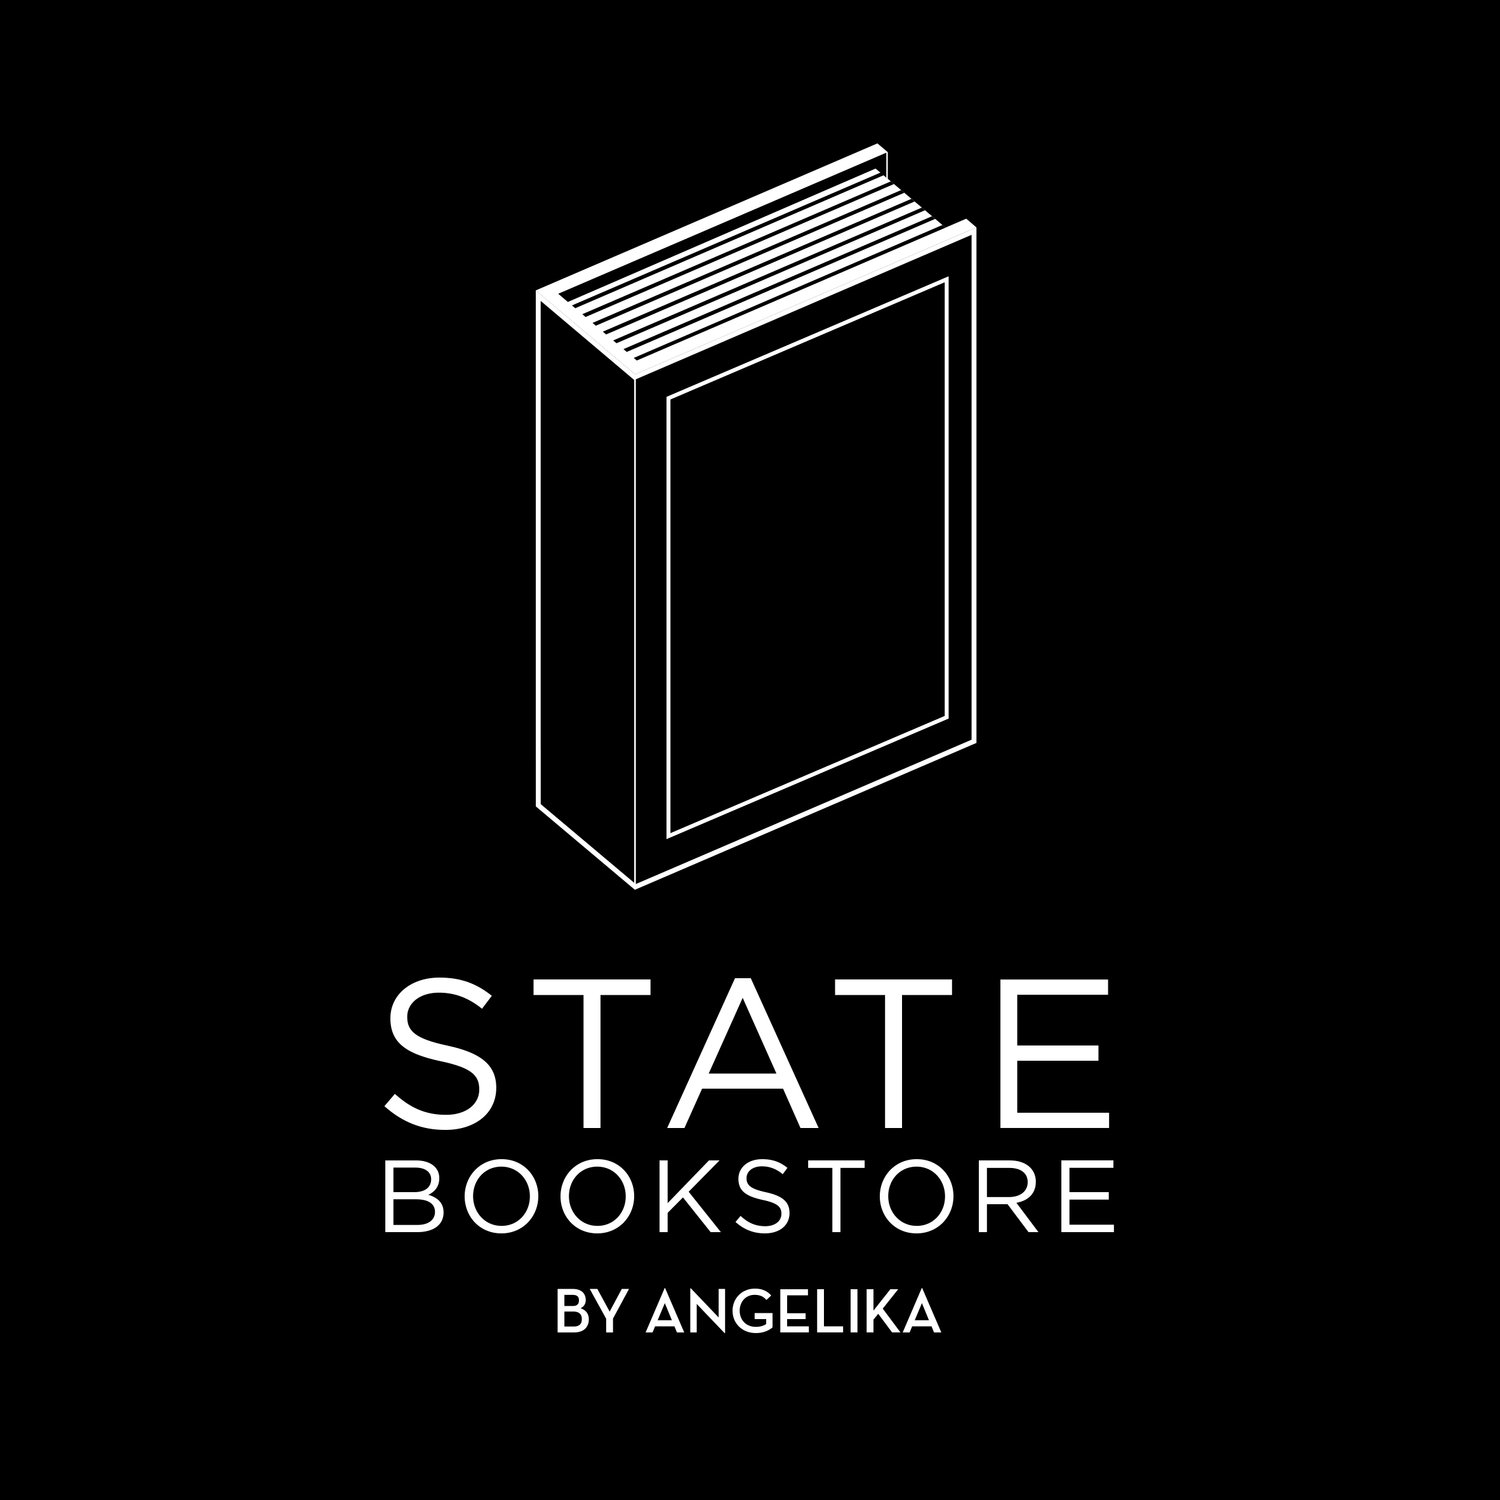 State Bookstore